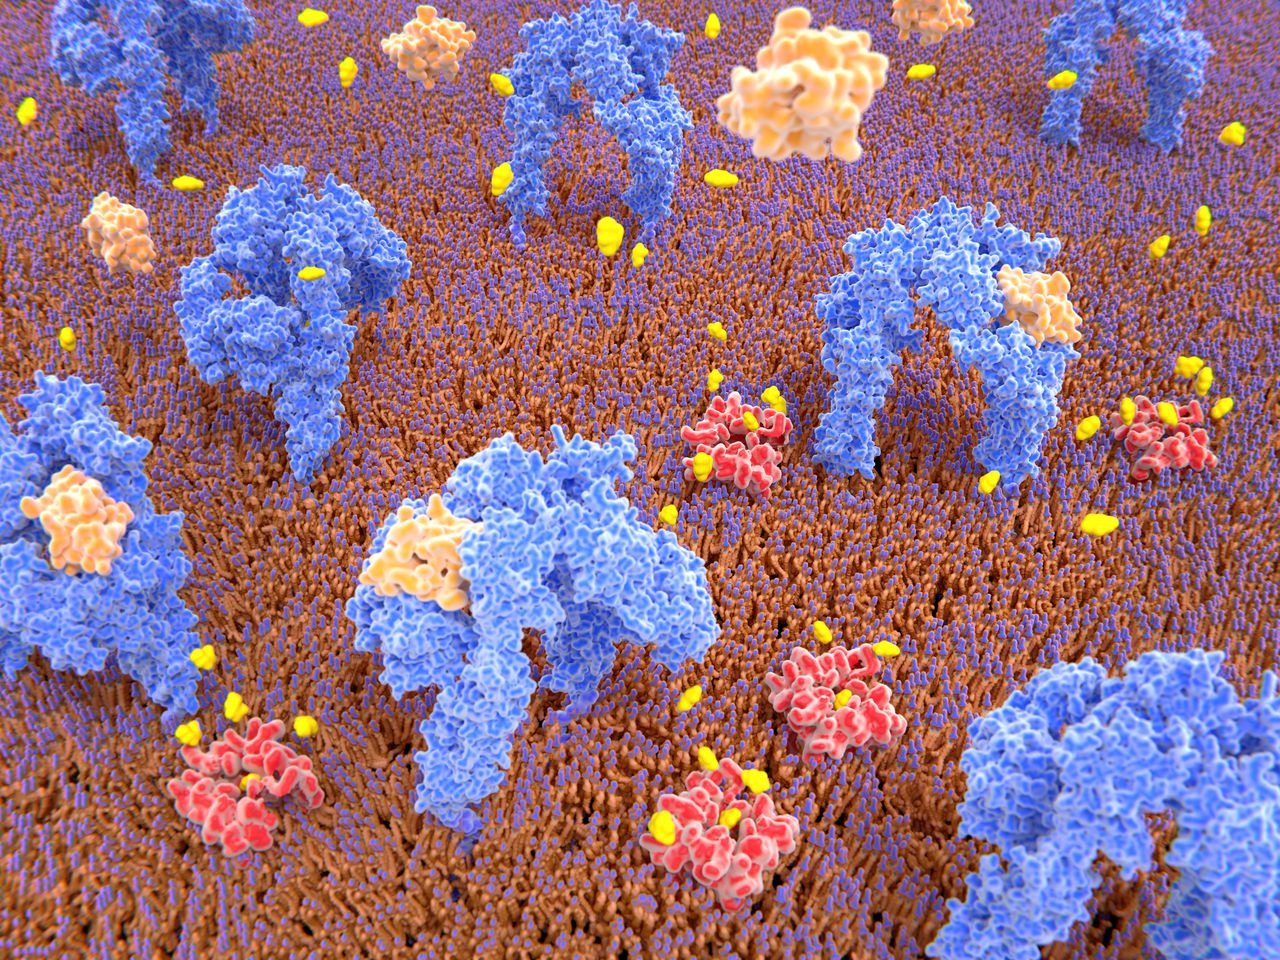 La unión de la insulina (naranja claro) induce cambios estructurales dentro del receptor, que activa una cascada de señales que conduce al transporte de glucosa (amarillo) al interior de la célula a través de las proteínas transportadoras de glucosa (rojo).